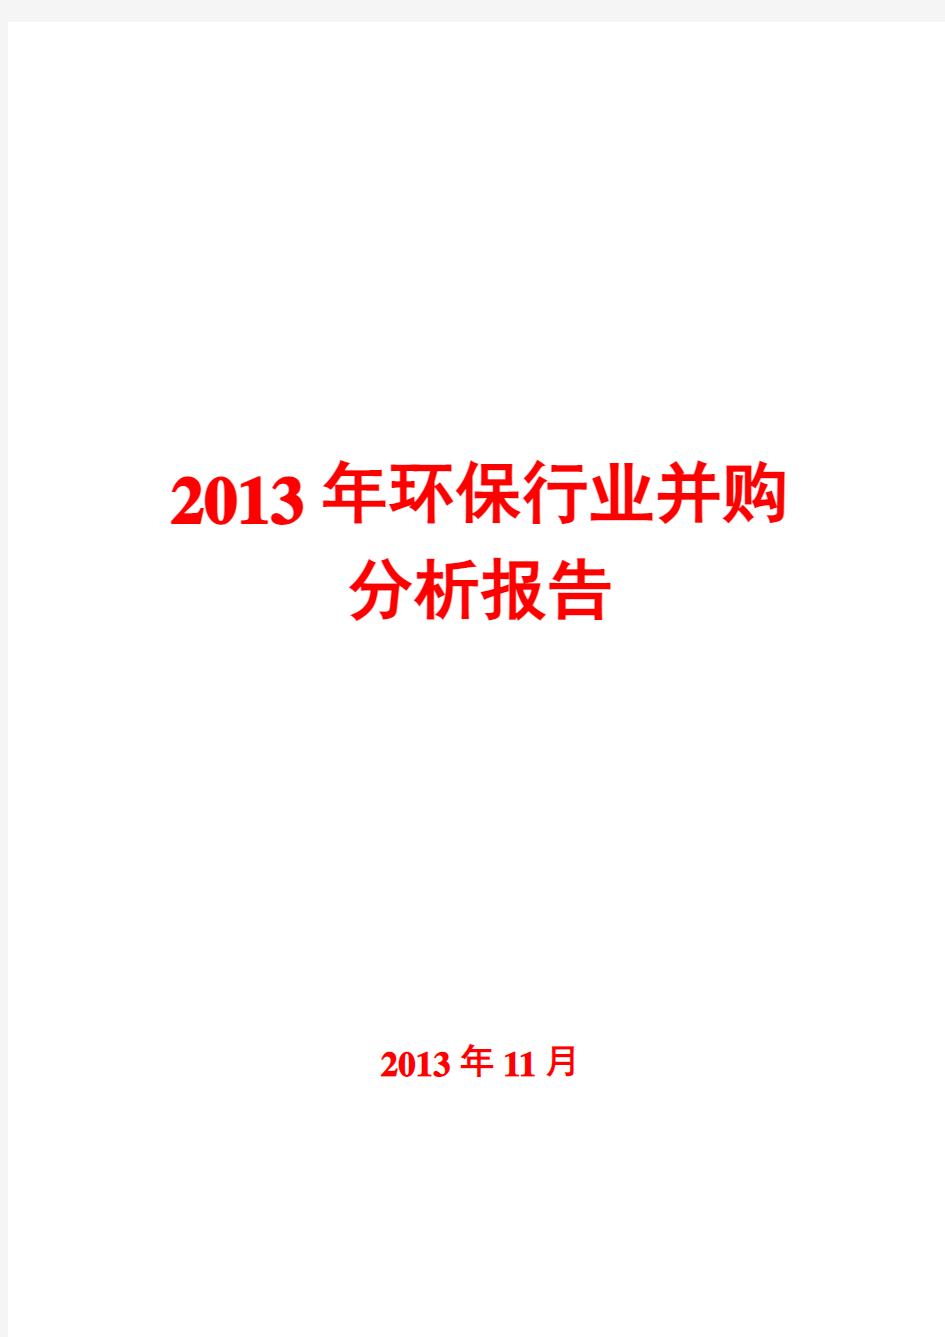 2013年环保行业并购分析报告